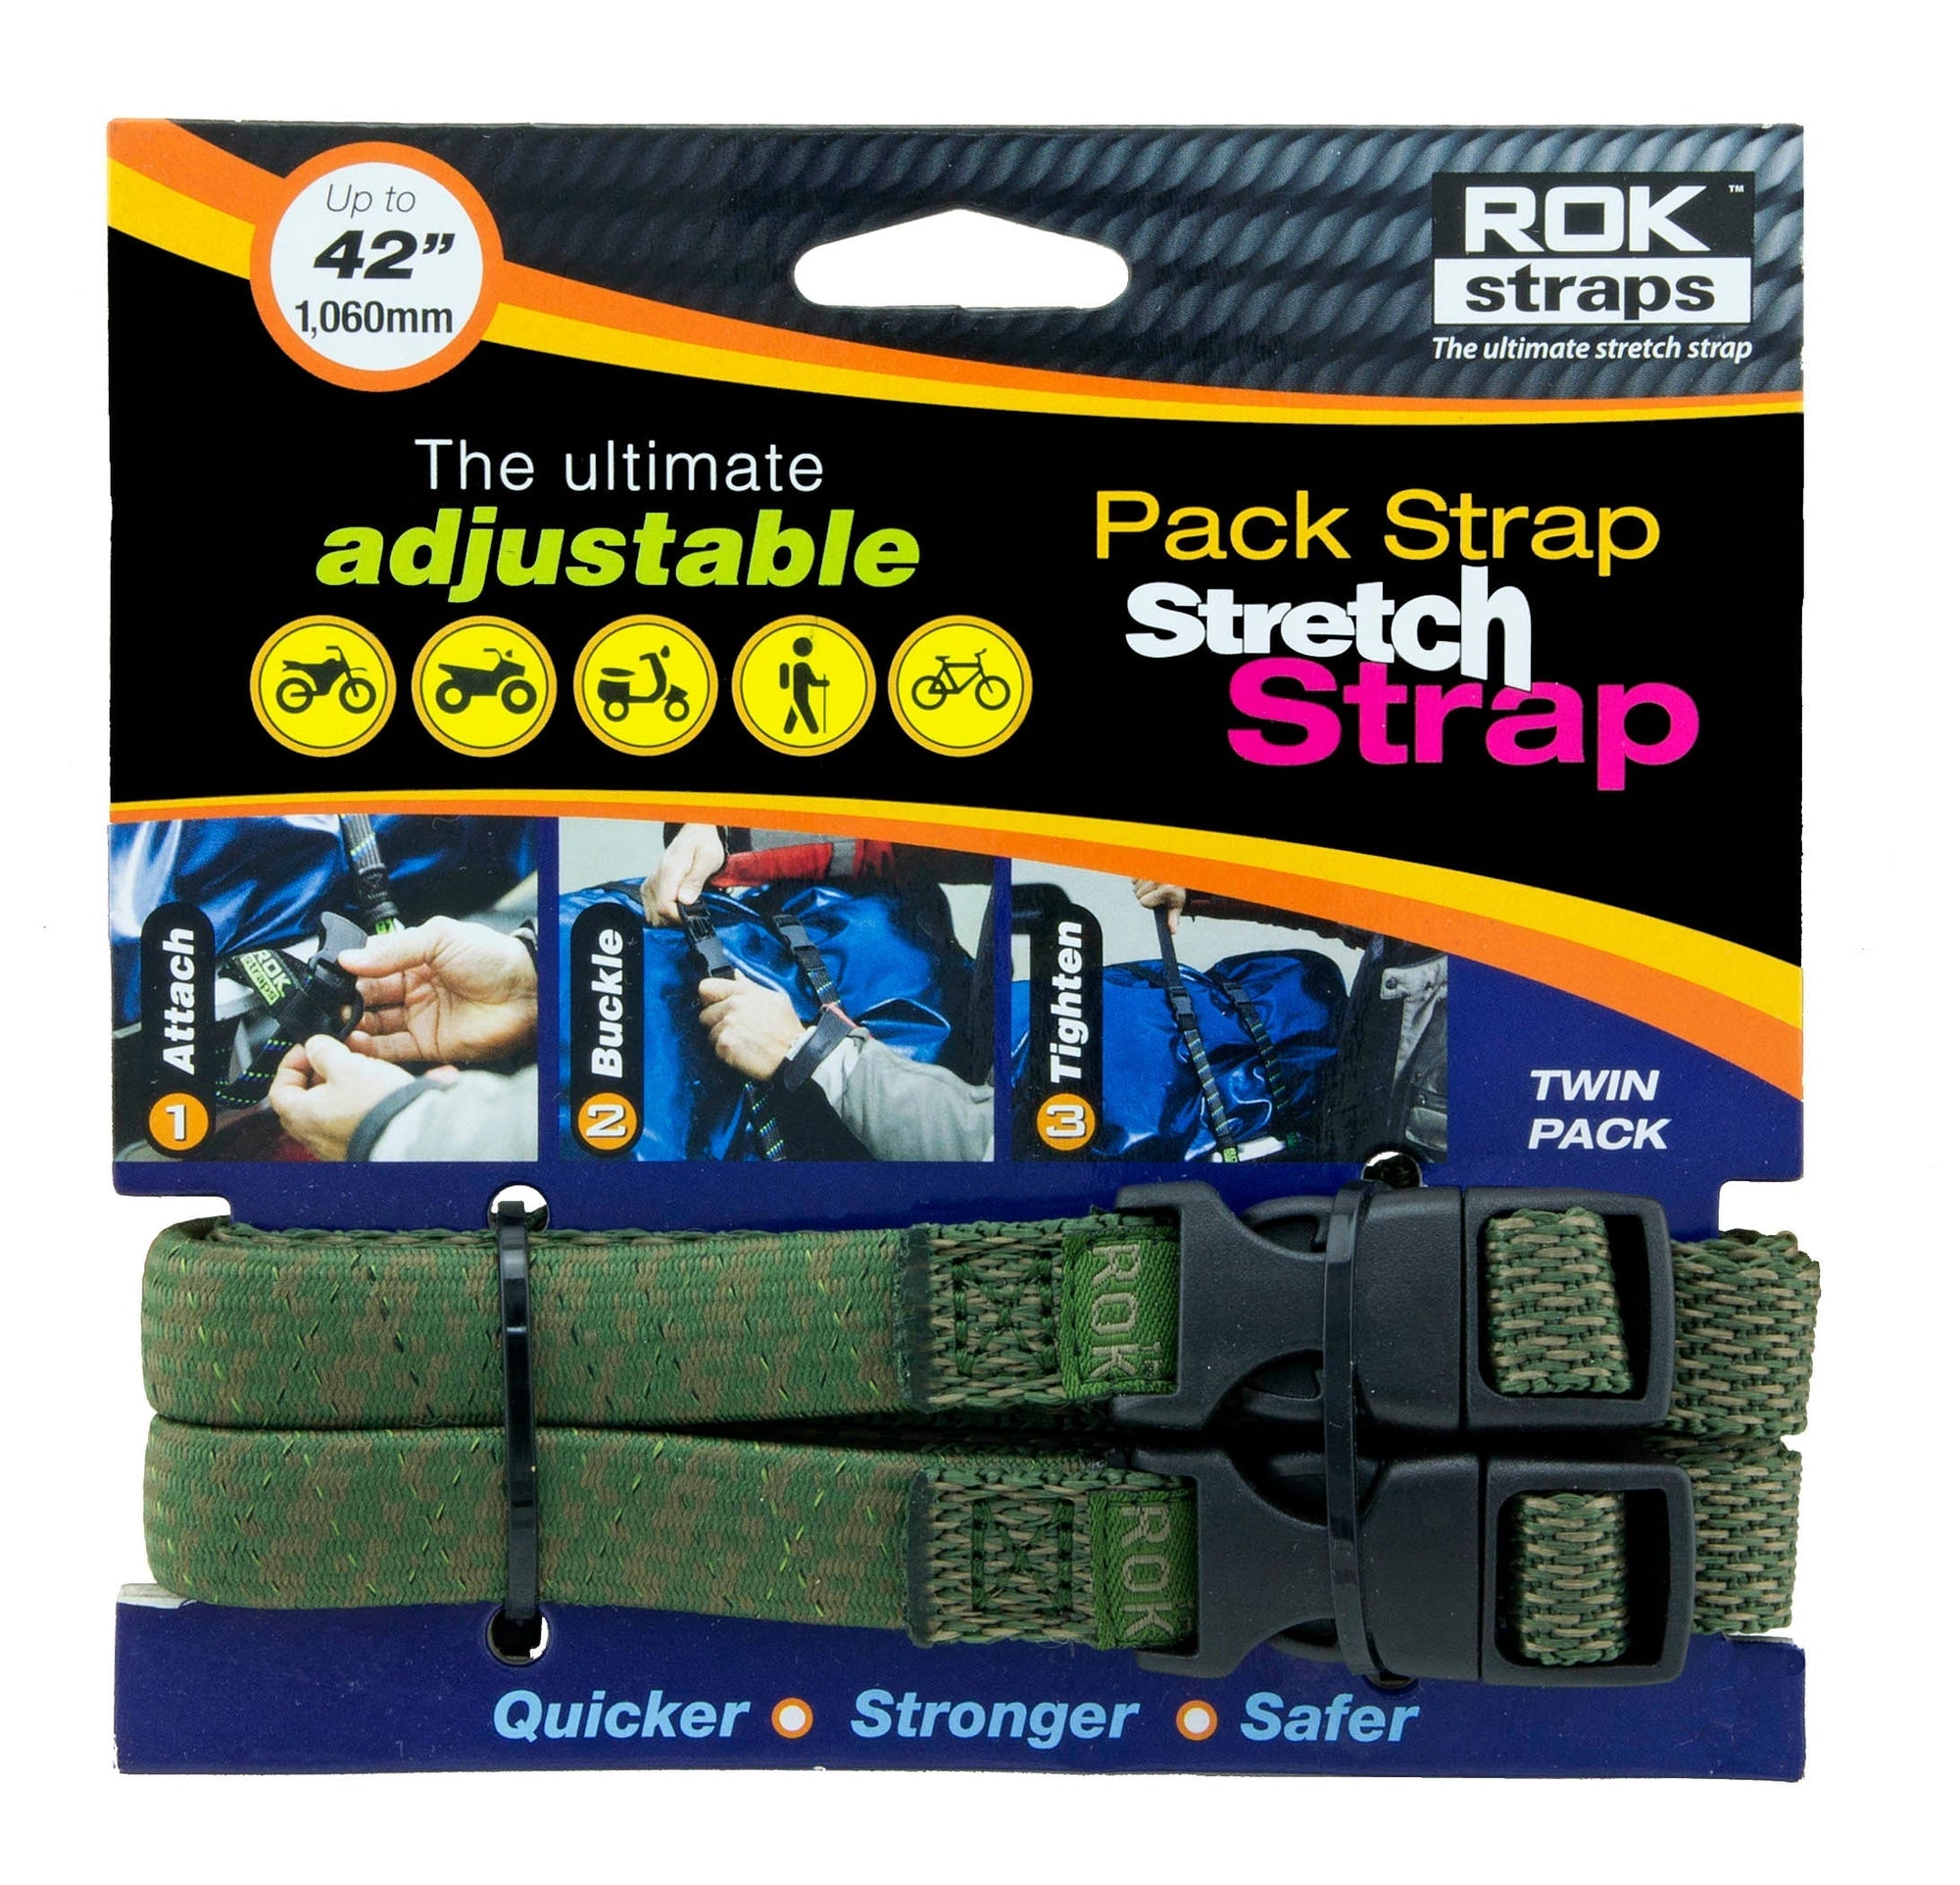 Pack Strap Stretch Strap - 42" Jungle Green